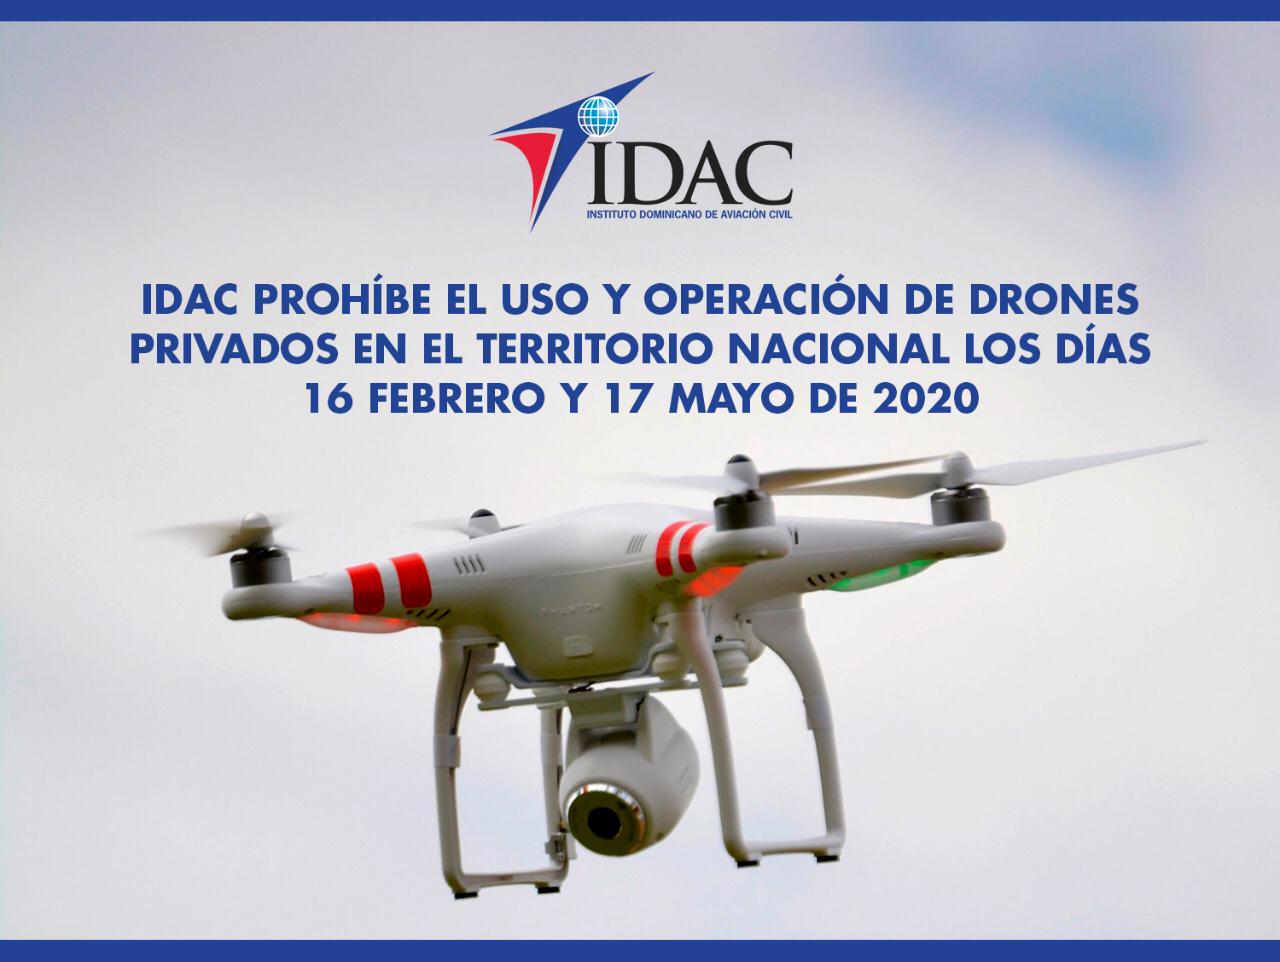 IDAC prohíbe uso y operación de drones privados en días  de las elecciones